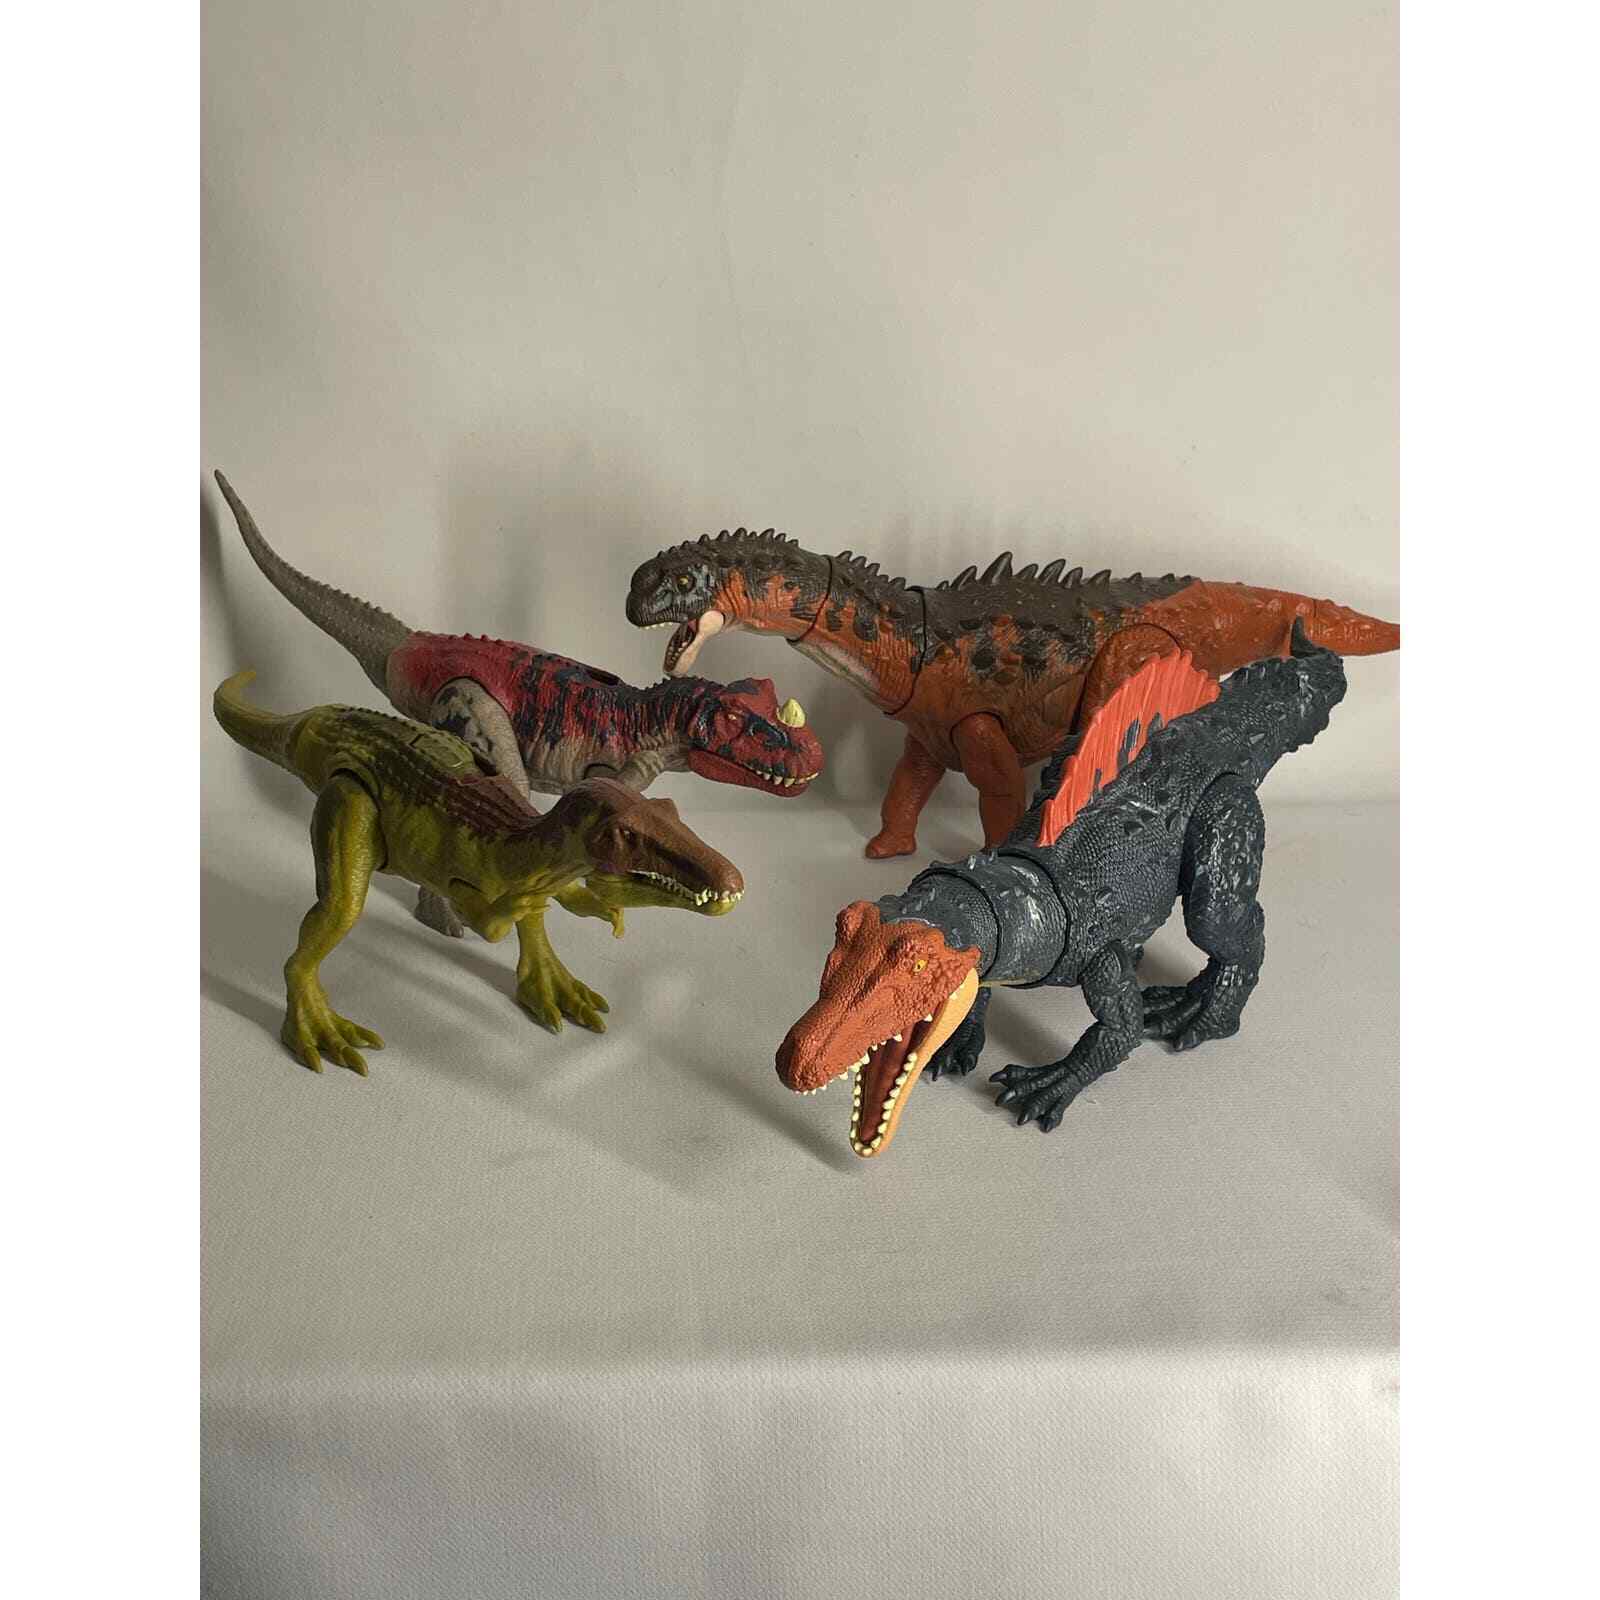 Jurassic World Dino Lot of 4- Ampelosaurus, Siamosaurus, Green Red Ceratosaurus